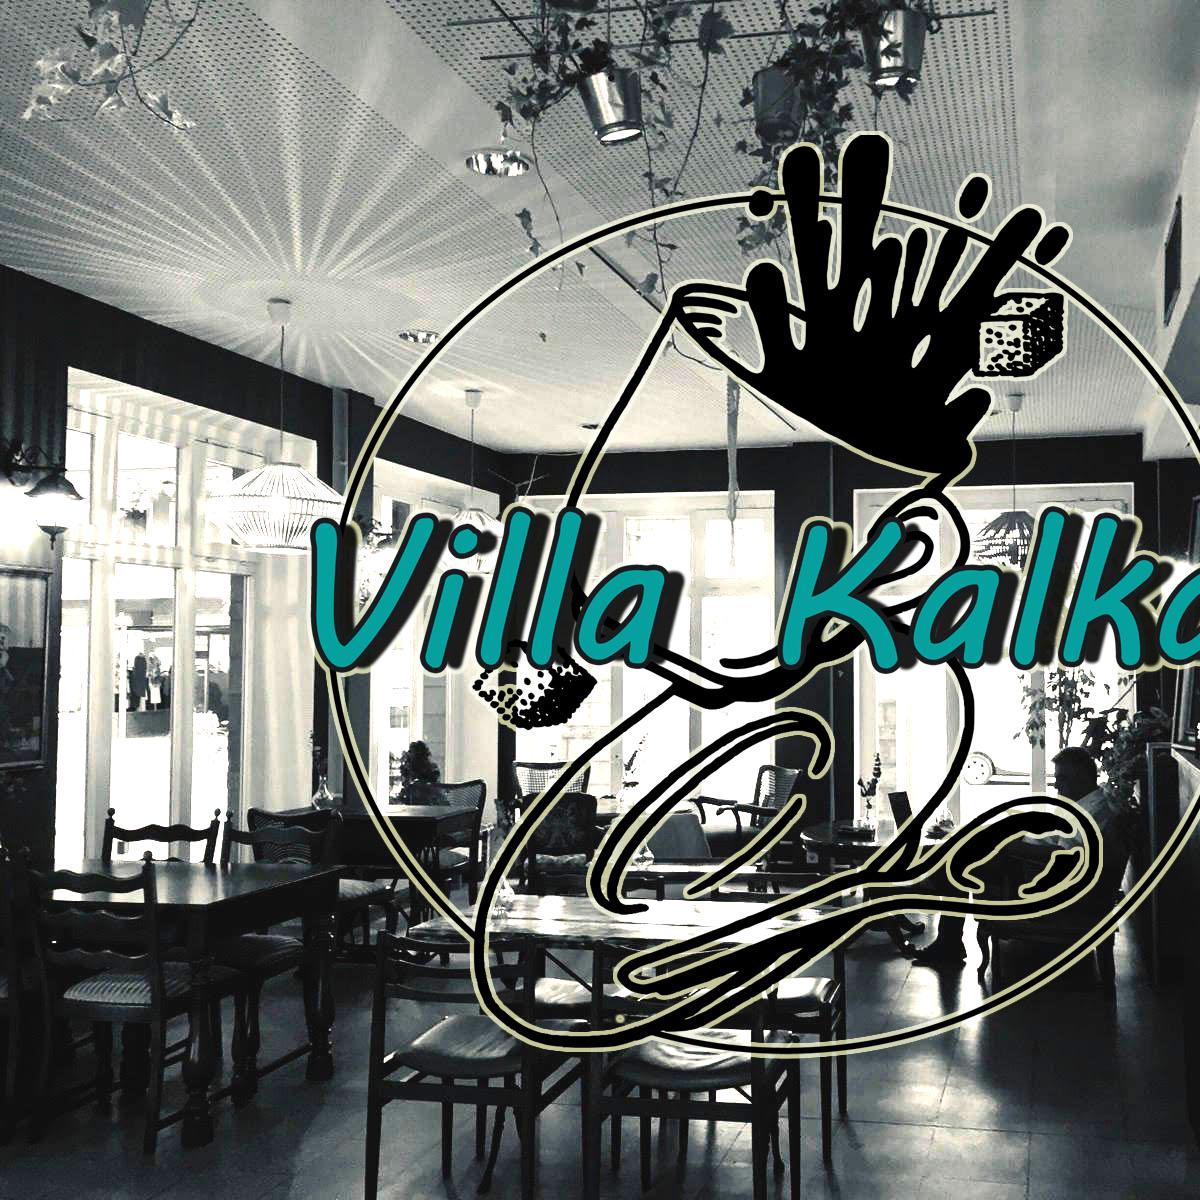 Restaurant "Villa Kalka" in Köln